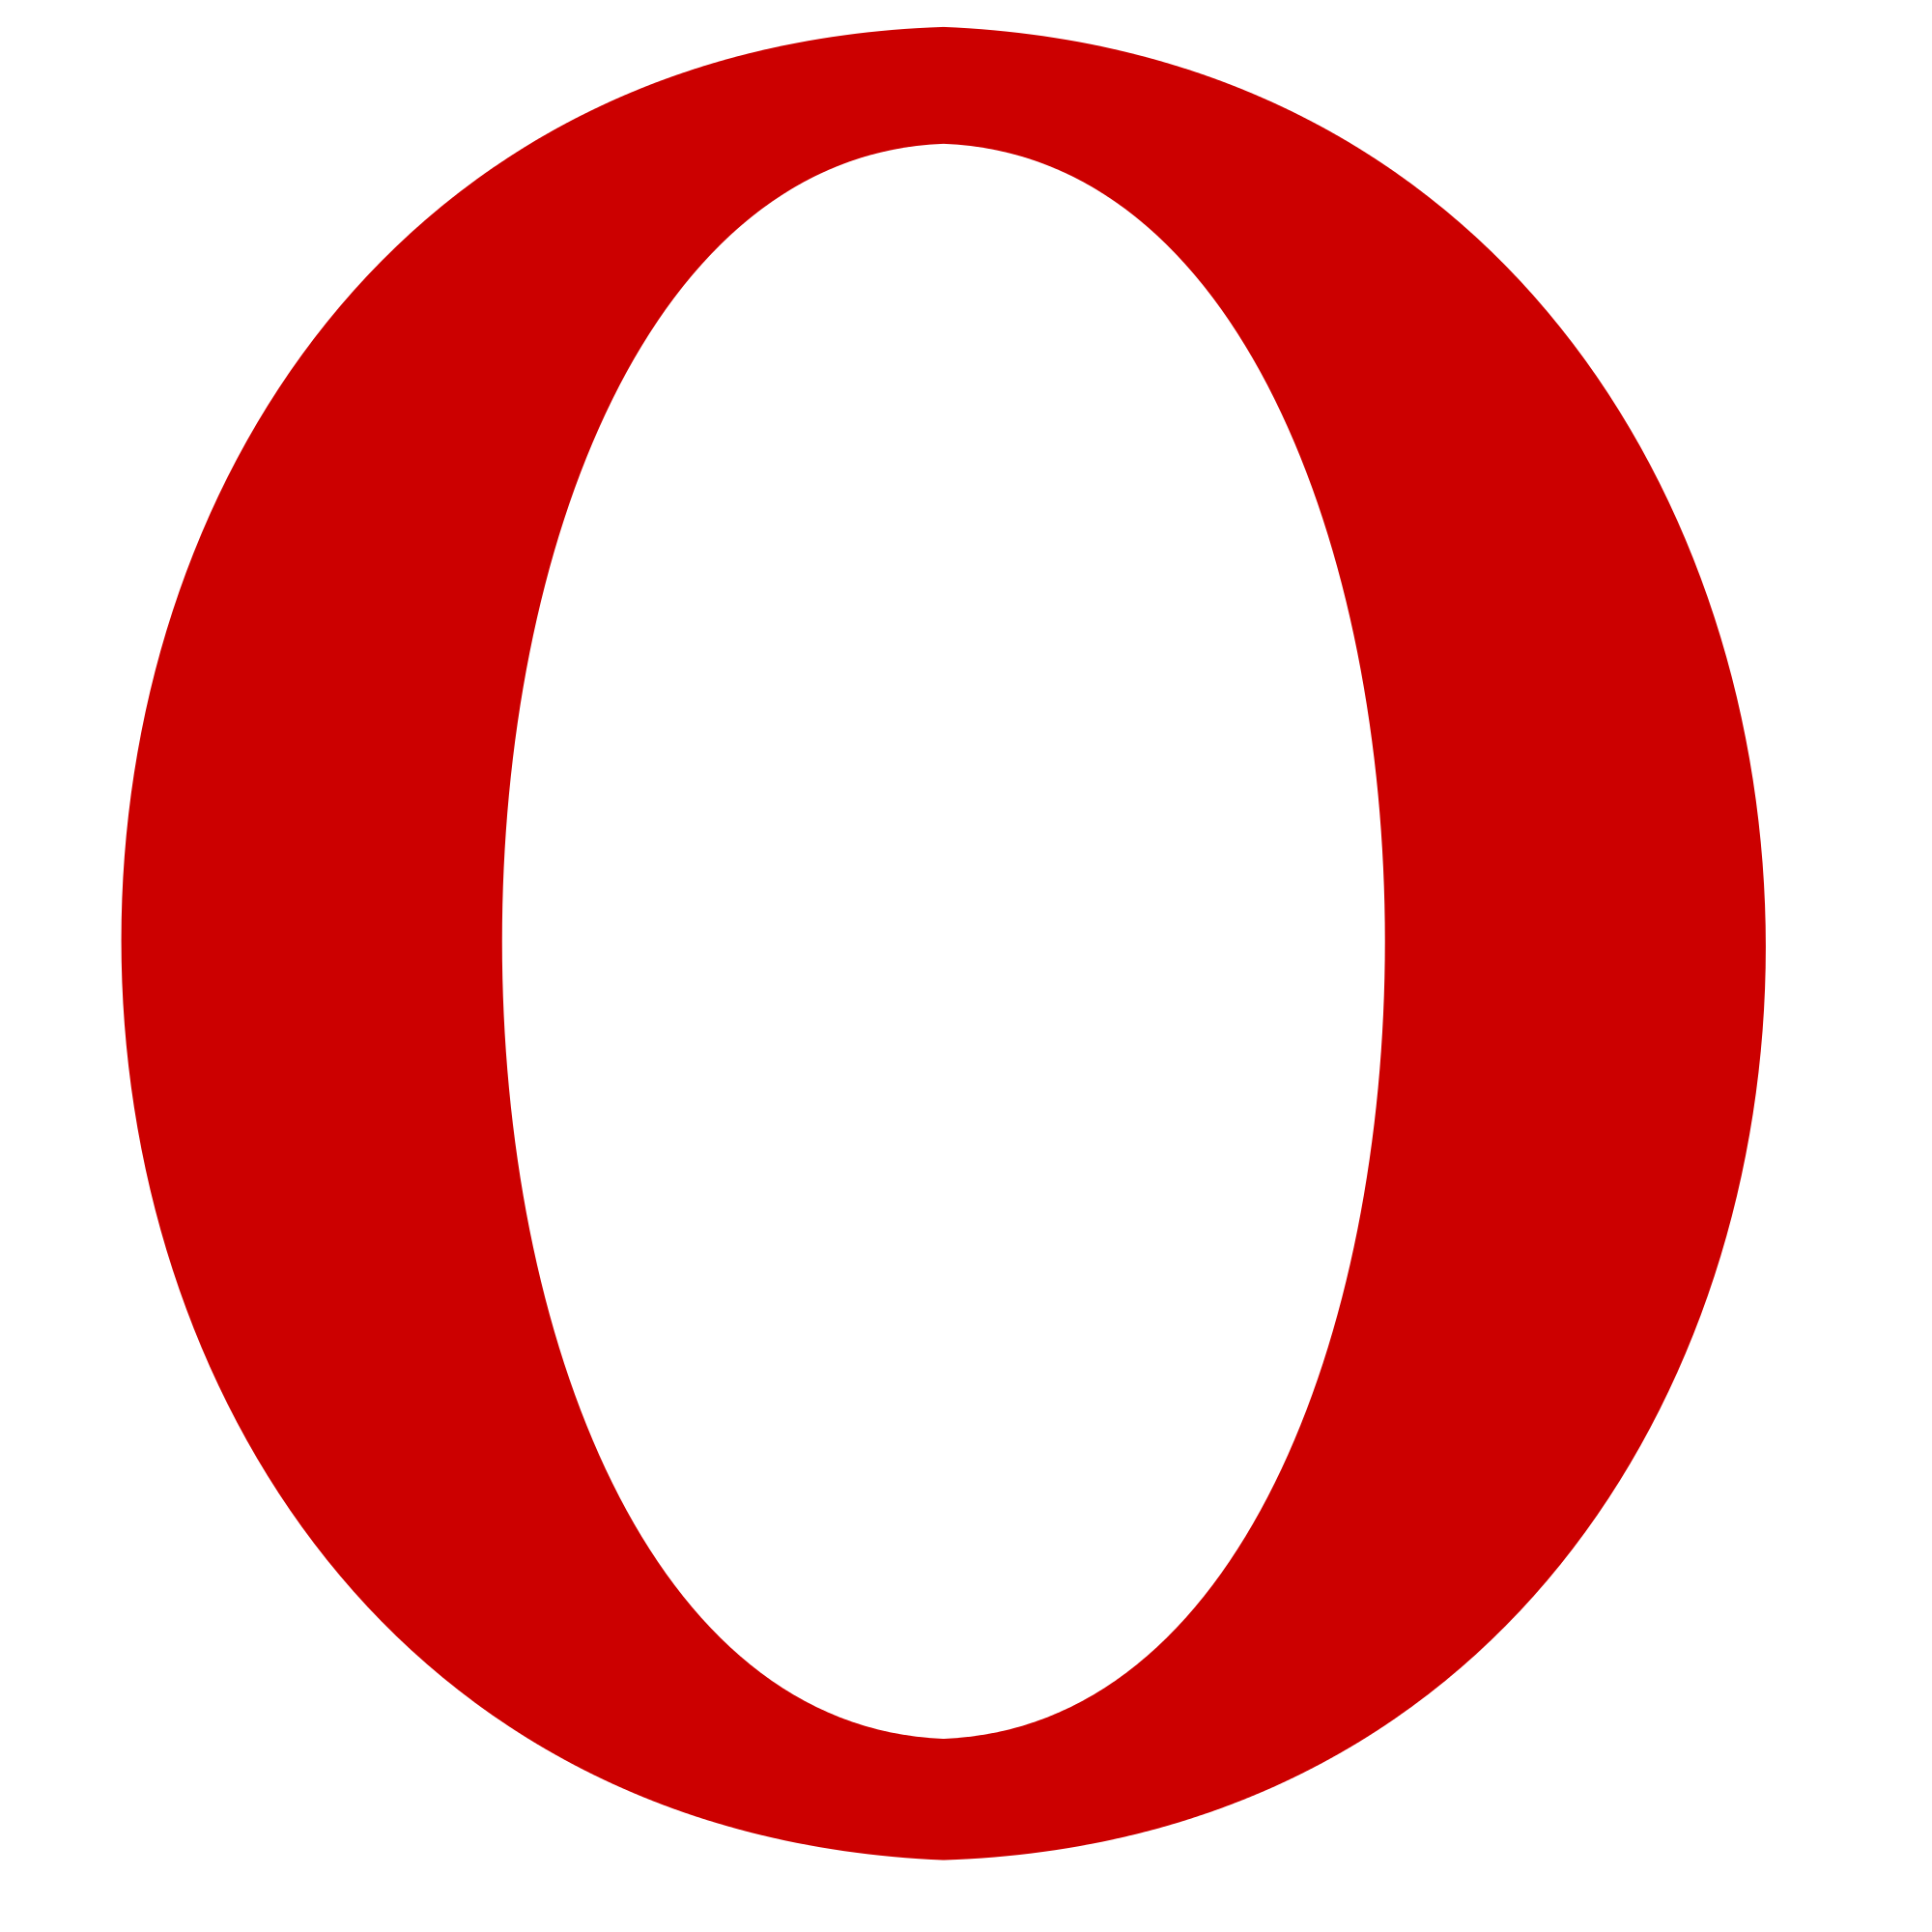 La lettera O